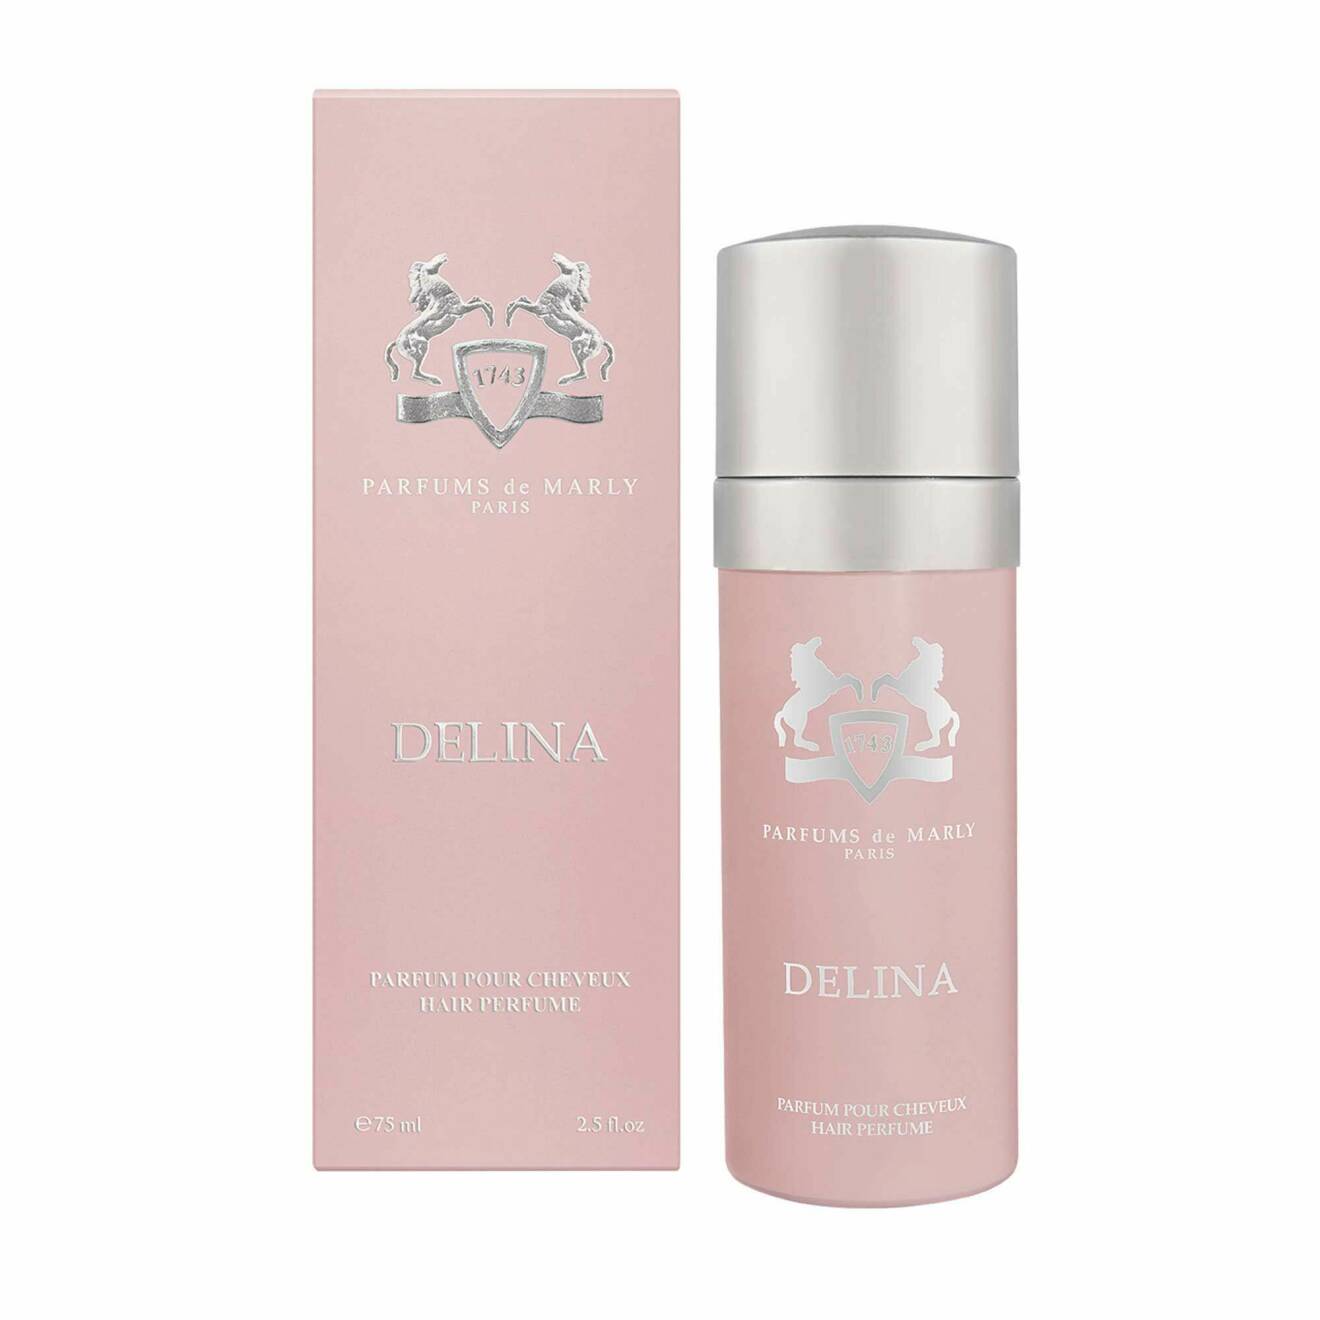 Delina Parfum pour Cheveaux från Parfums de Marly.